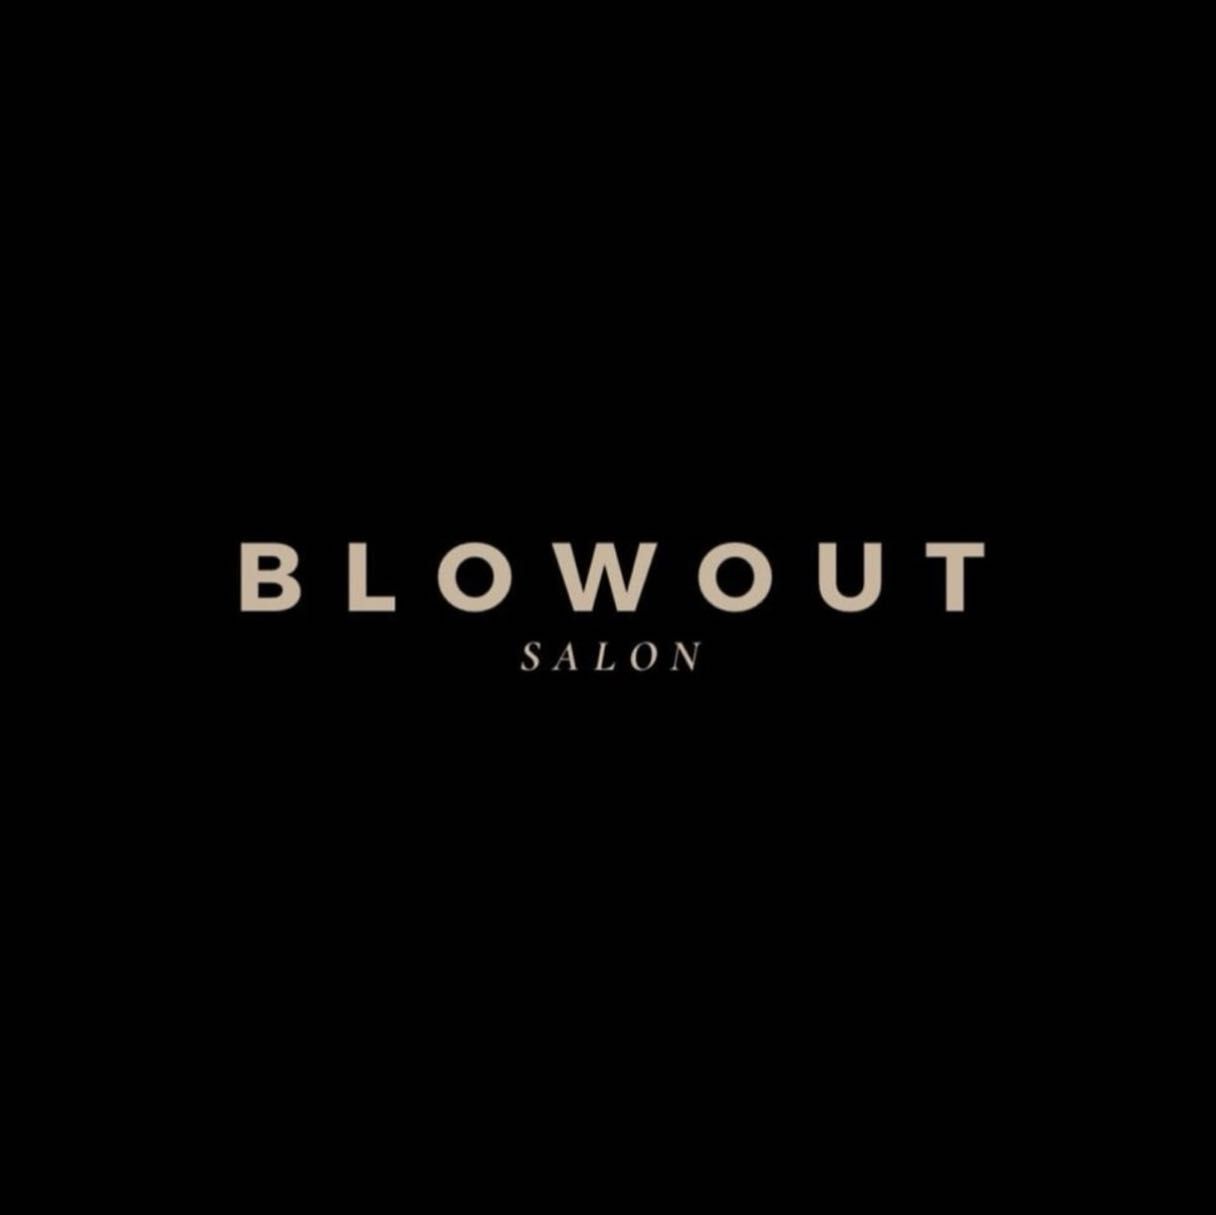 BlowOut Salon, BlowOut, 88 Whitehouse common road, Birmingham